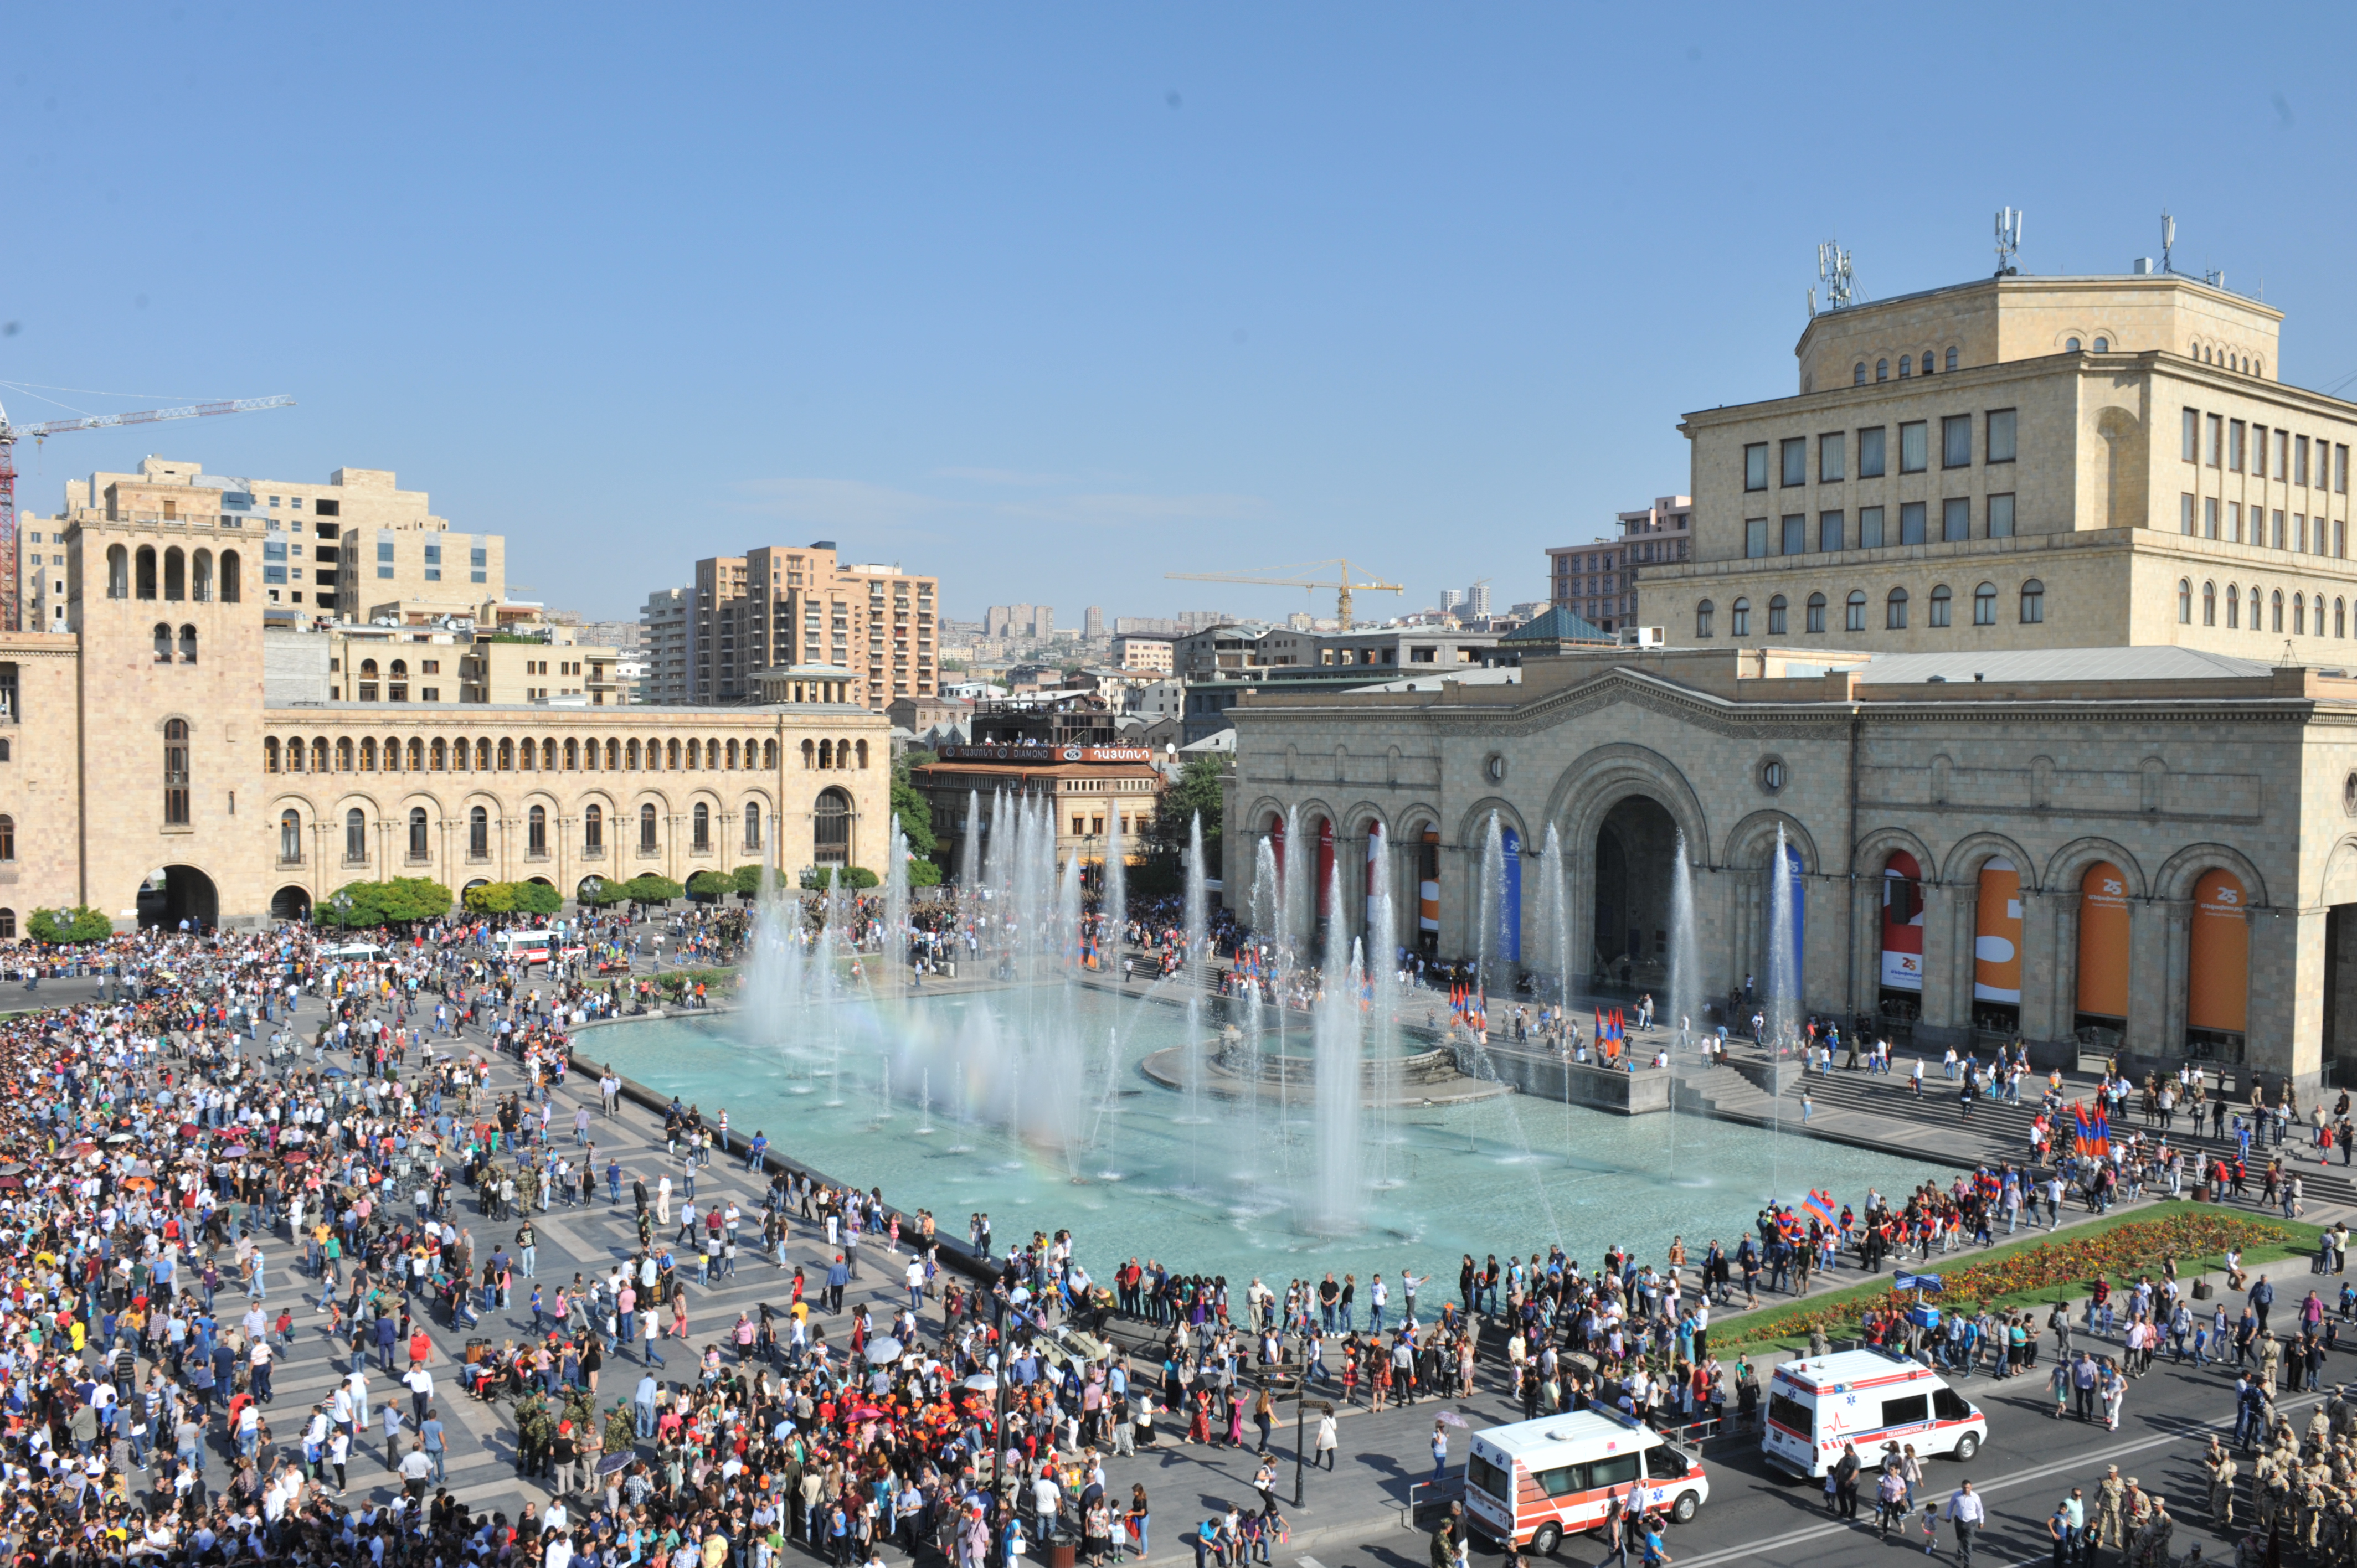 Иди ереван. Площадь Республики Ереван. Армения Ереван площадь Республики. Центральная площадь Еревана. Площадь независимости Ереван.